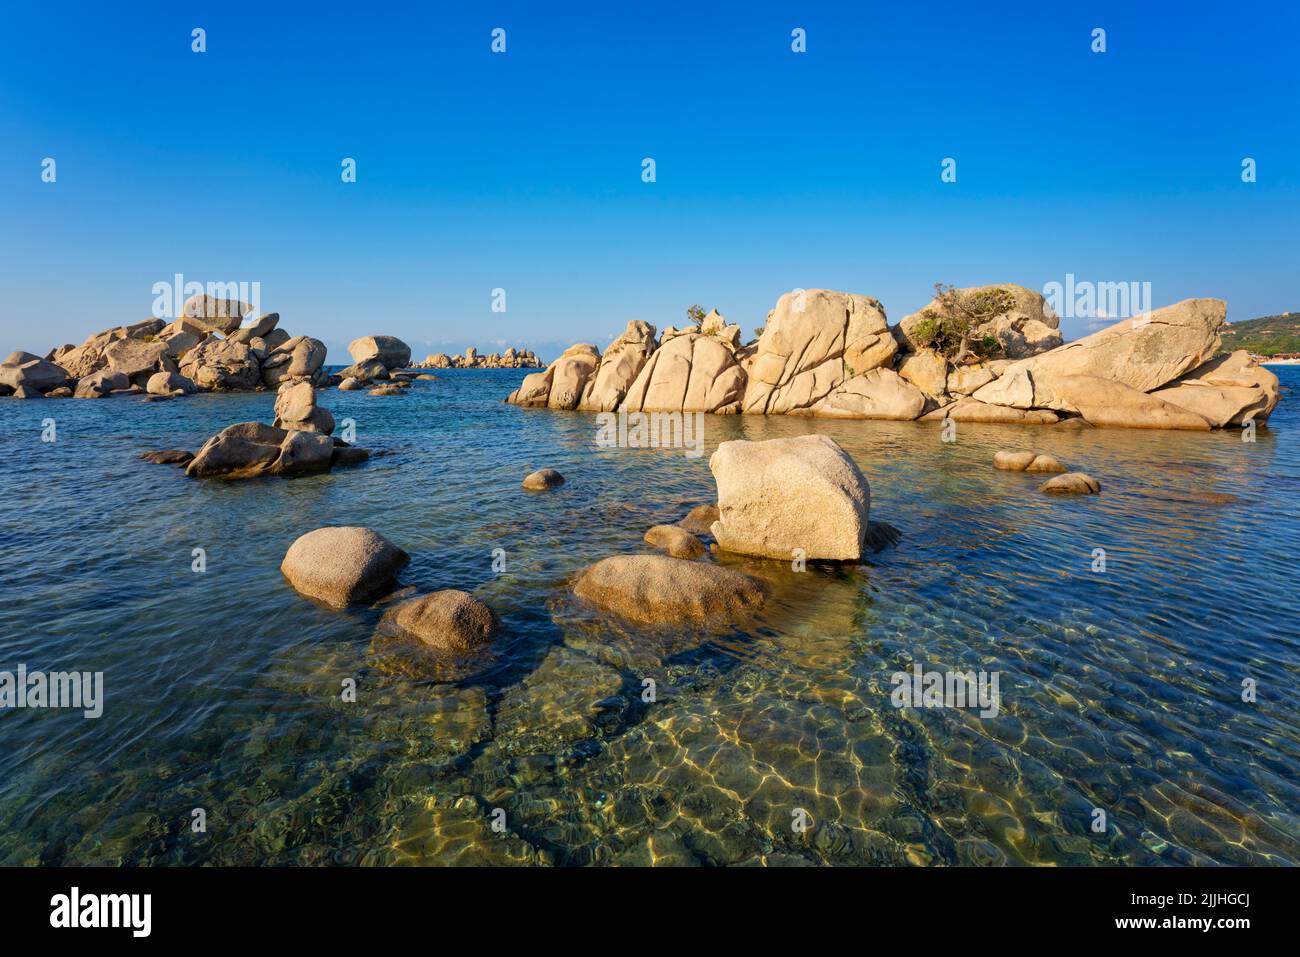 View of rocks at Palombaggia beach, Porto Vecchio, Corsica Stock Photo